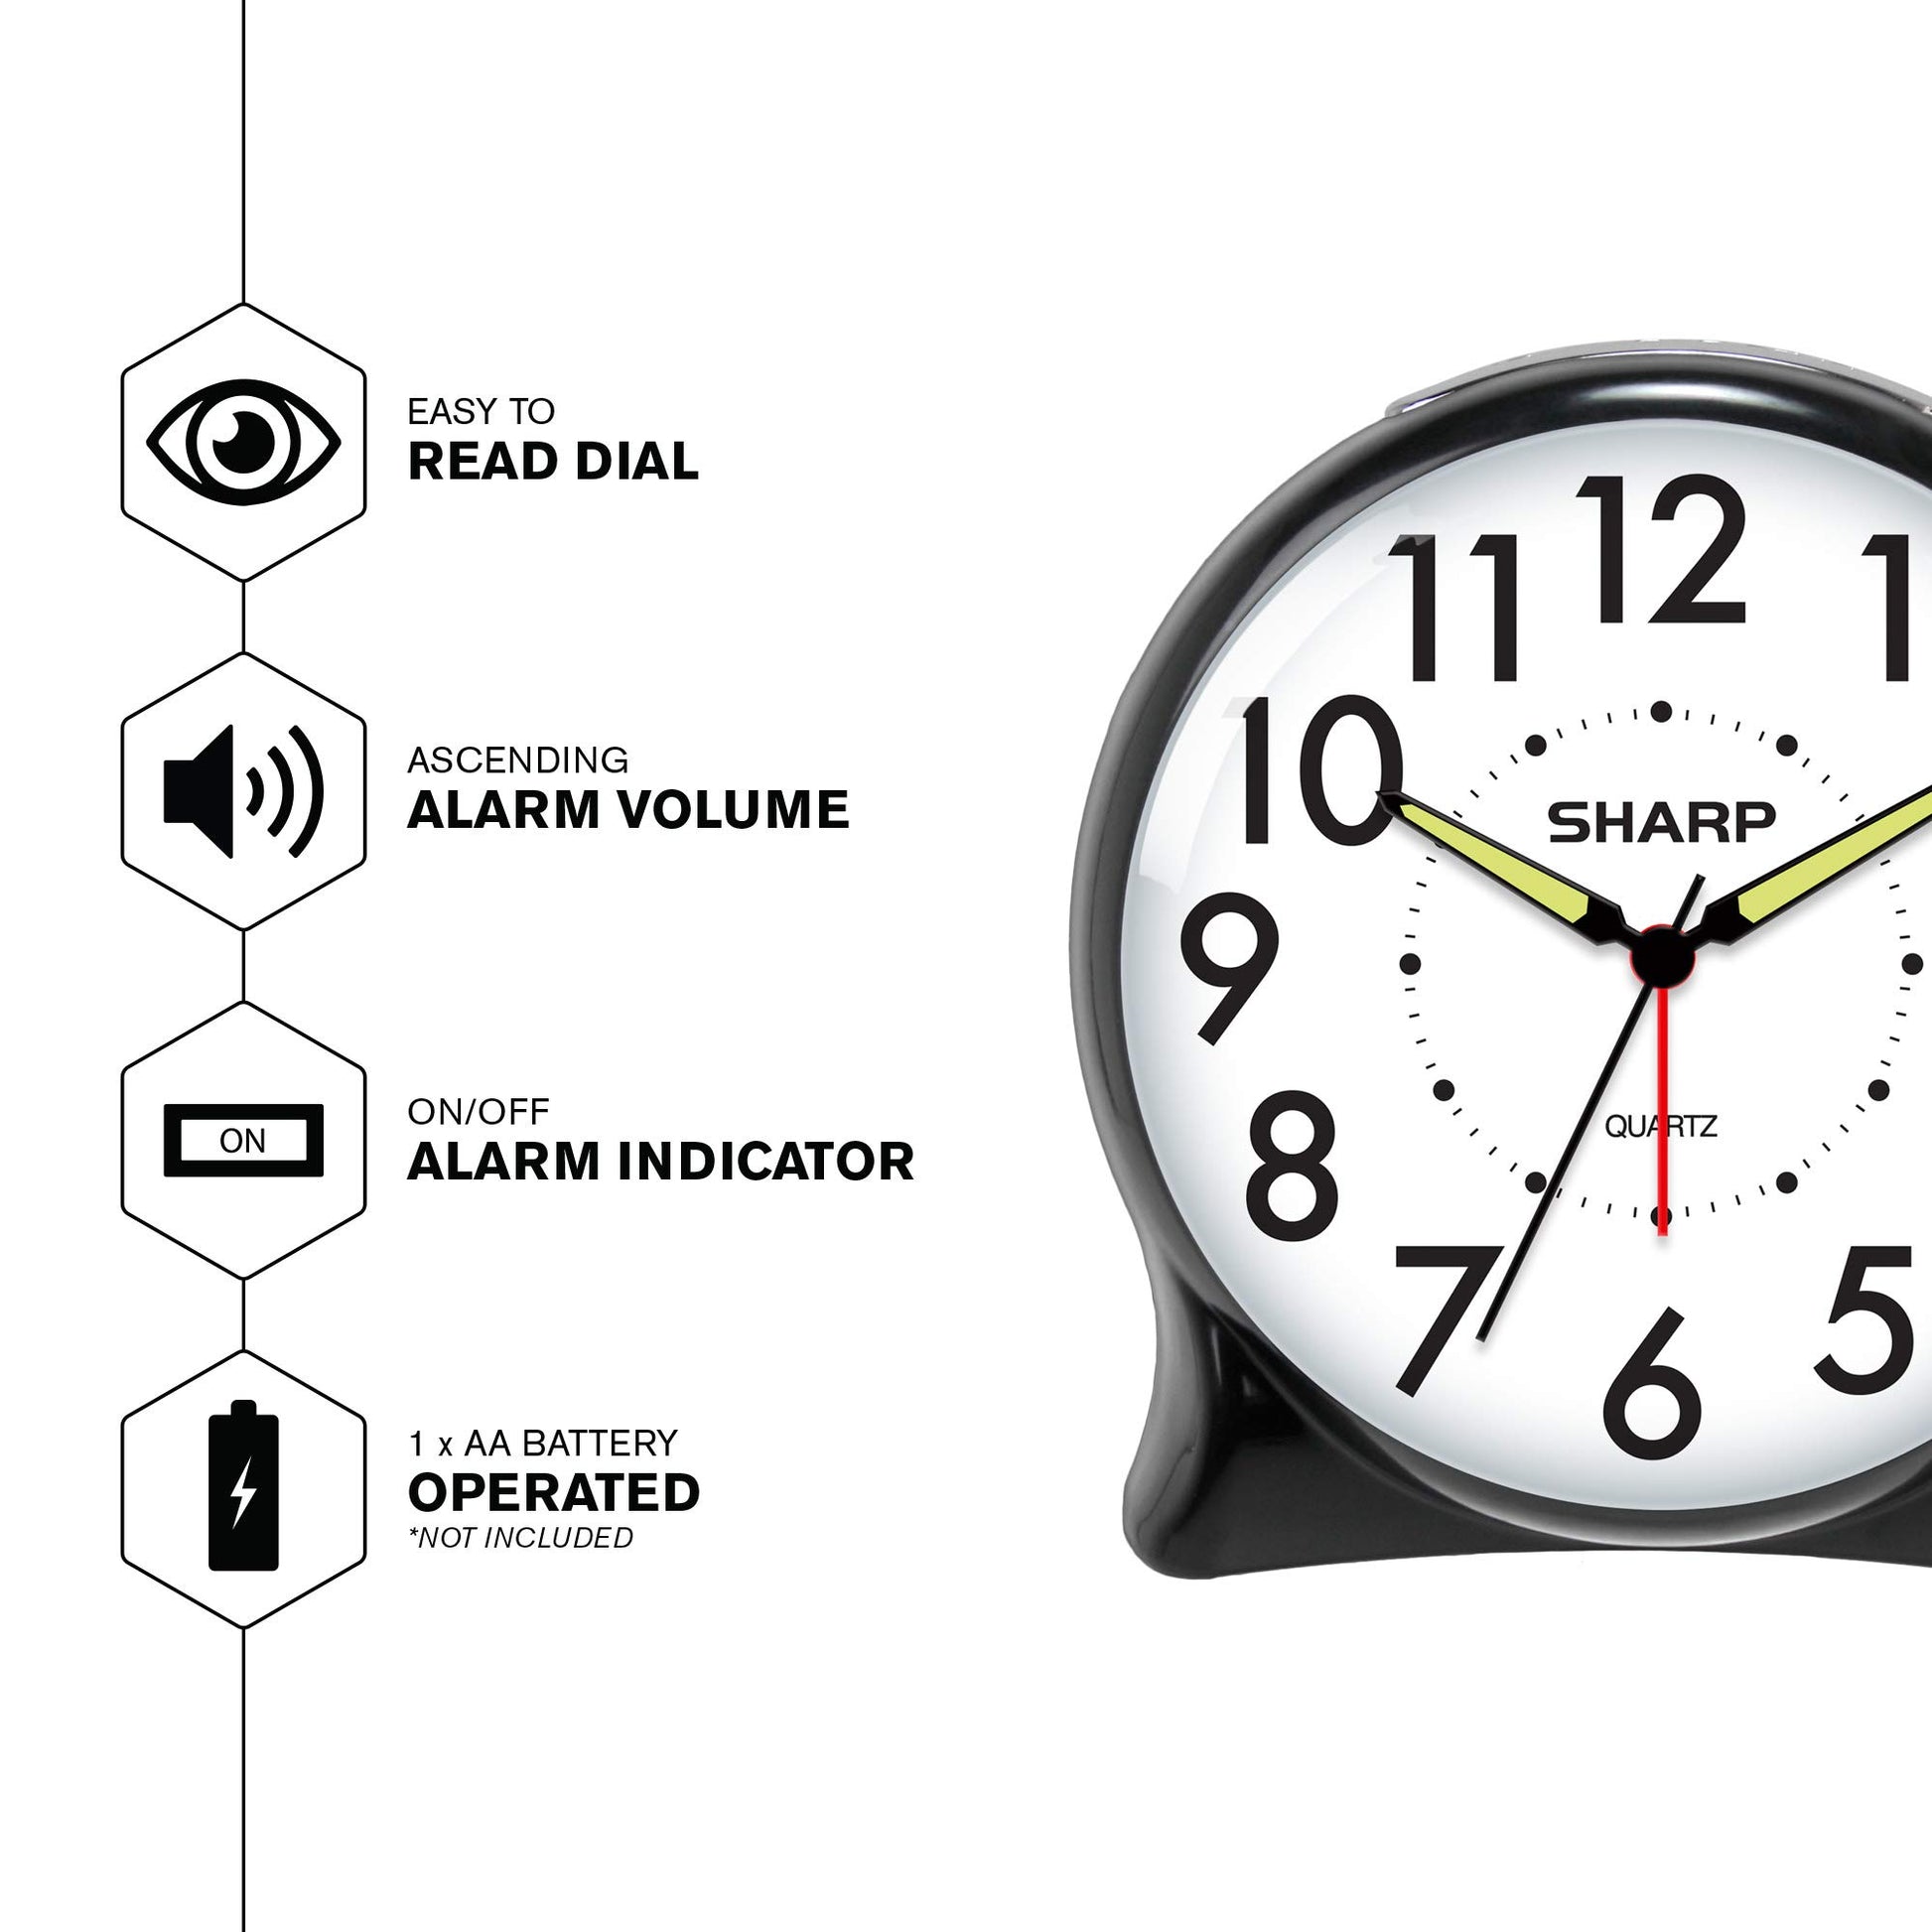 Sharp SPC127A Quartz Analog Alarm Clock (Black/White) - Opticdeals